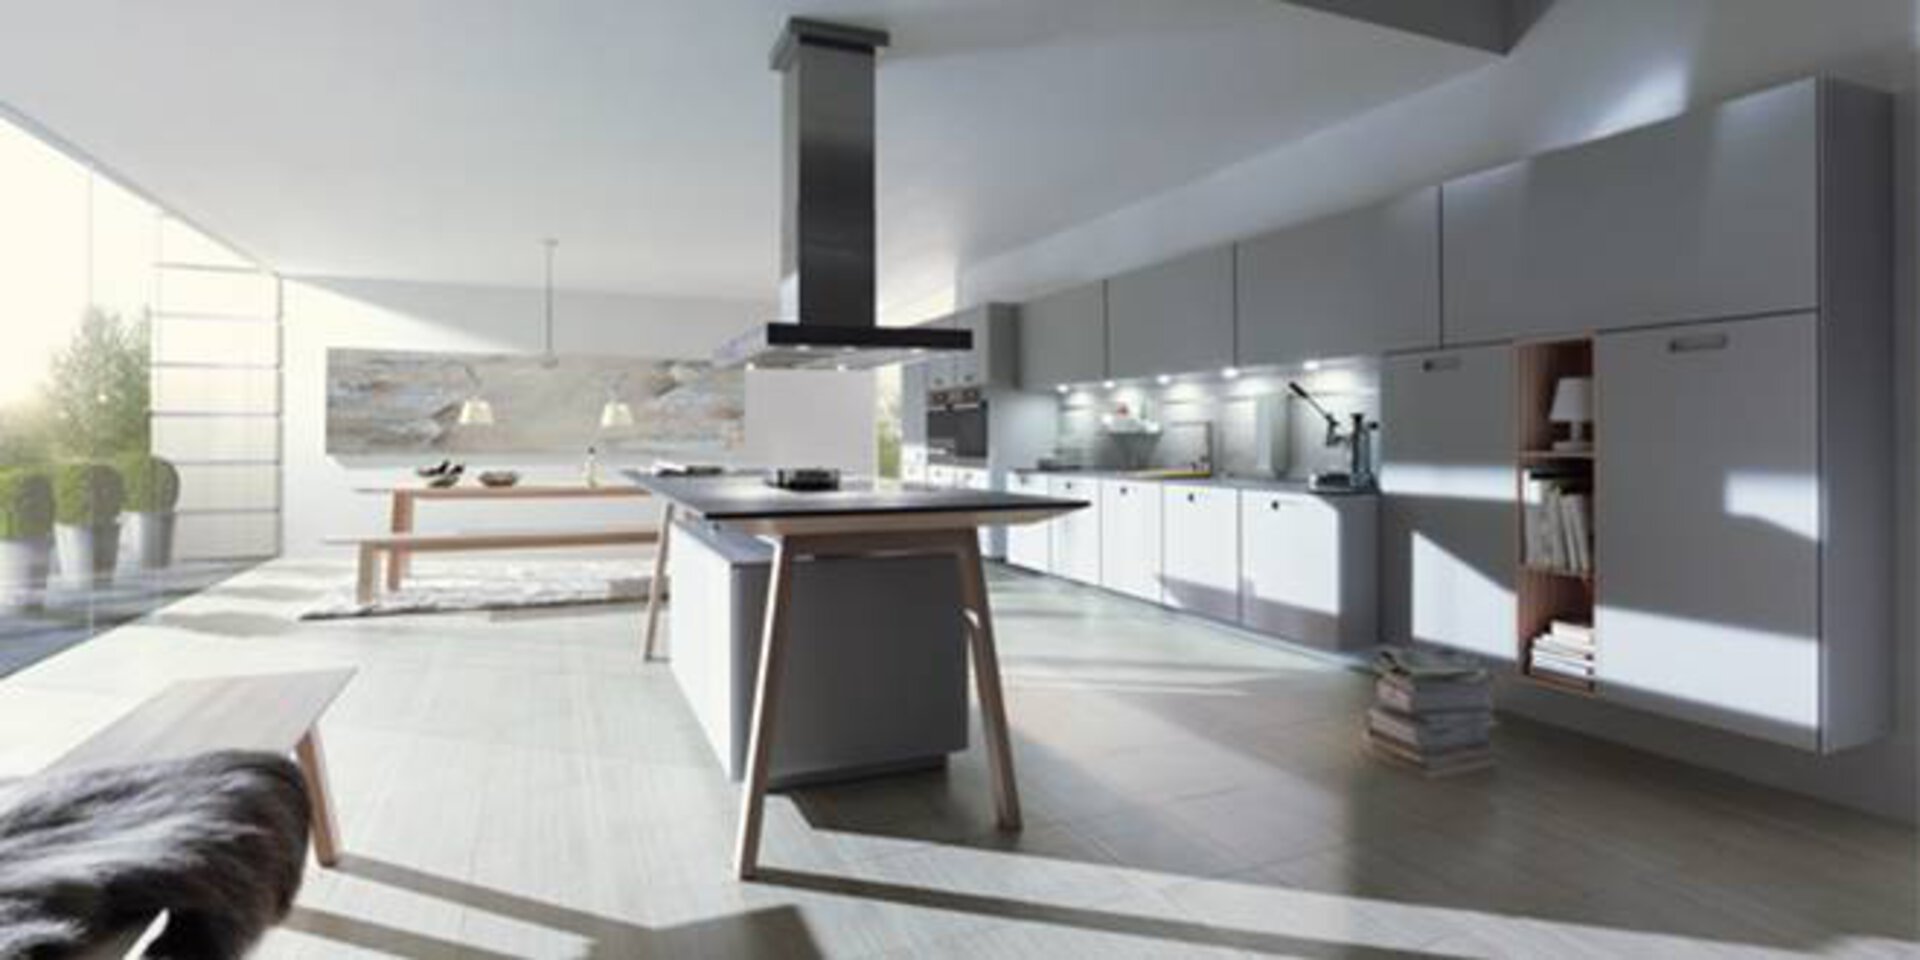 Premiumküche von NEXT125. Zu sehen ist eine große Küche in weiß, grau und Holz.